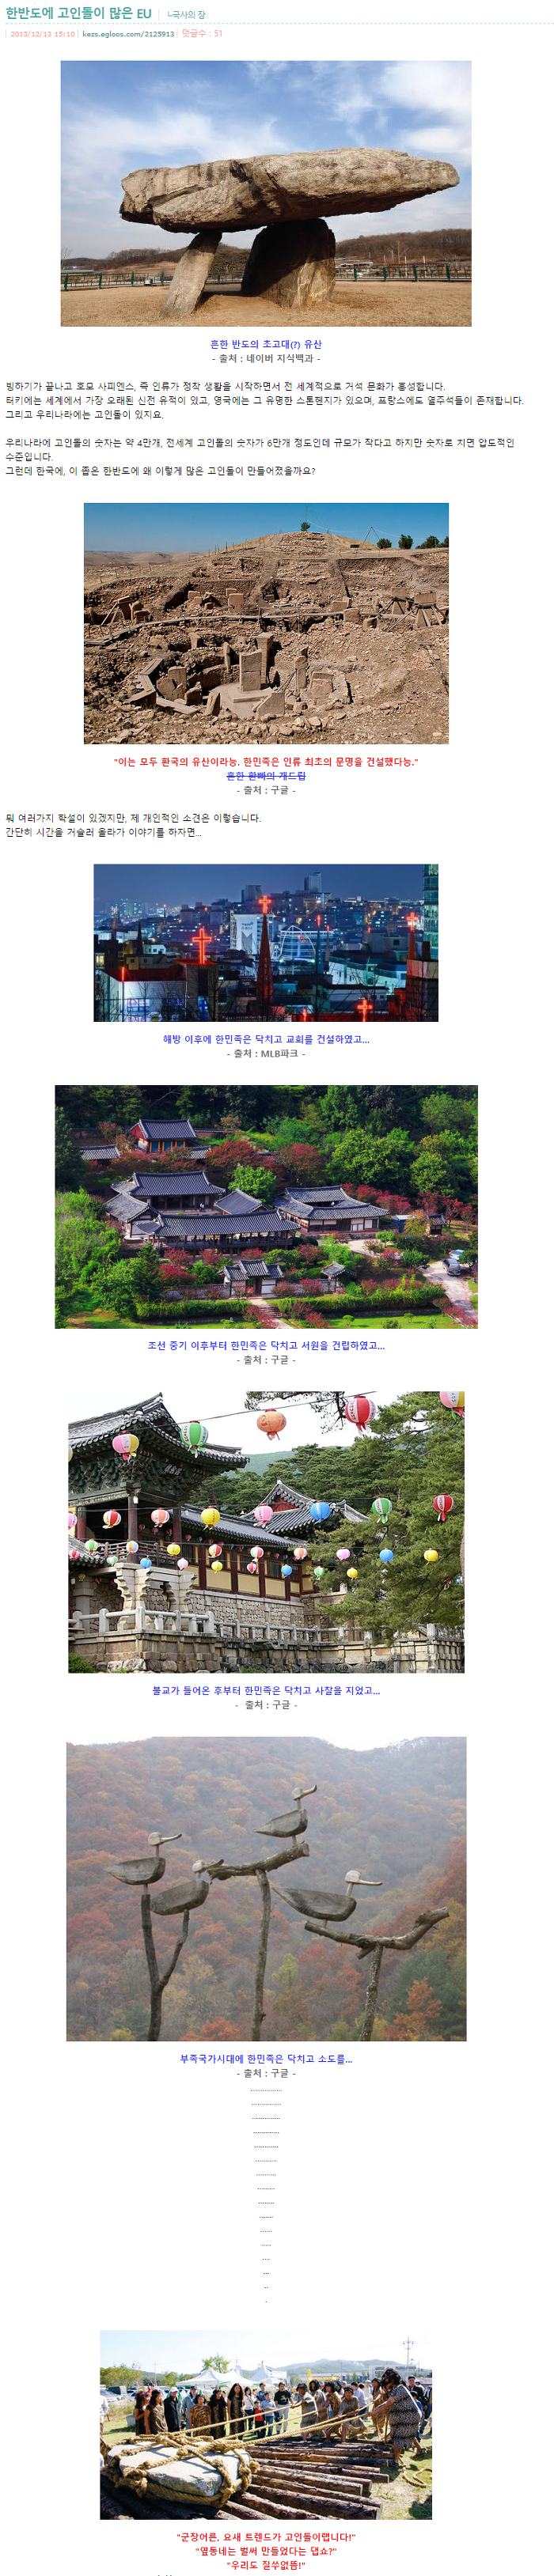 전세계 고인돌의 반이상이 한국에 있는 이유